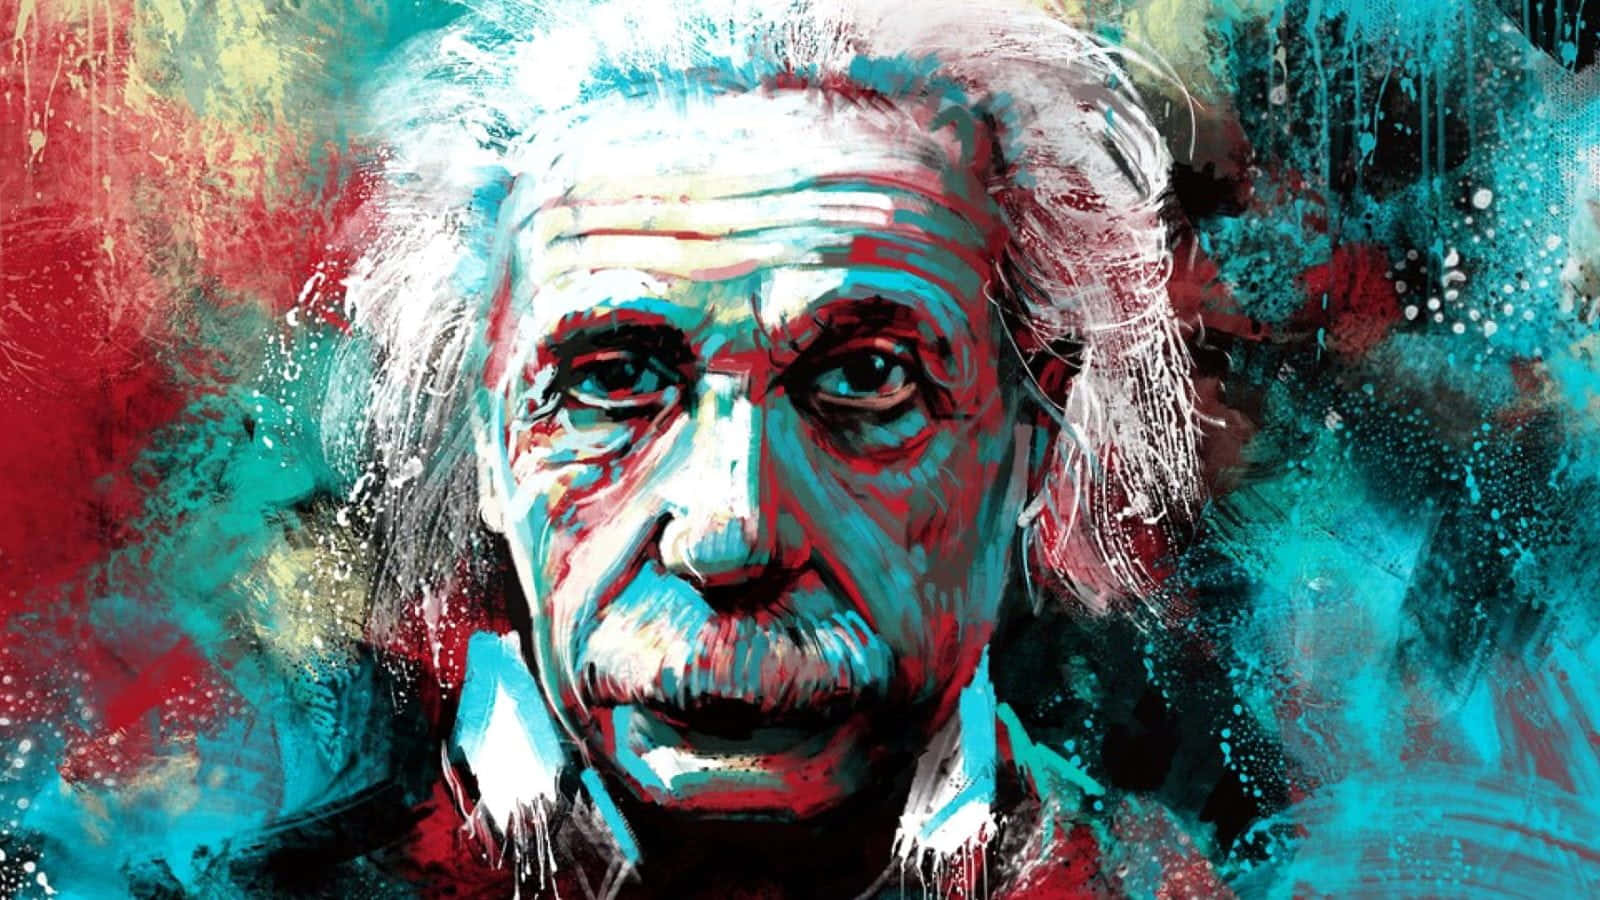 Albert Einstein - The Man Who Changed The World